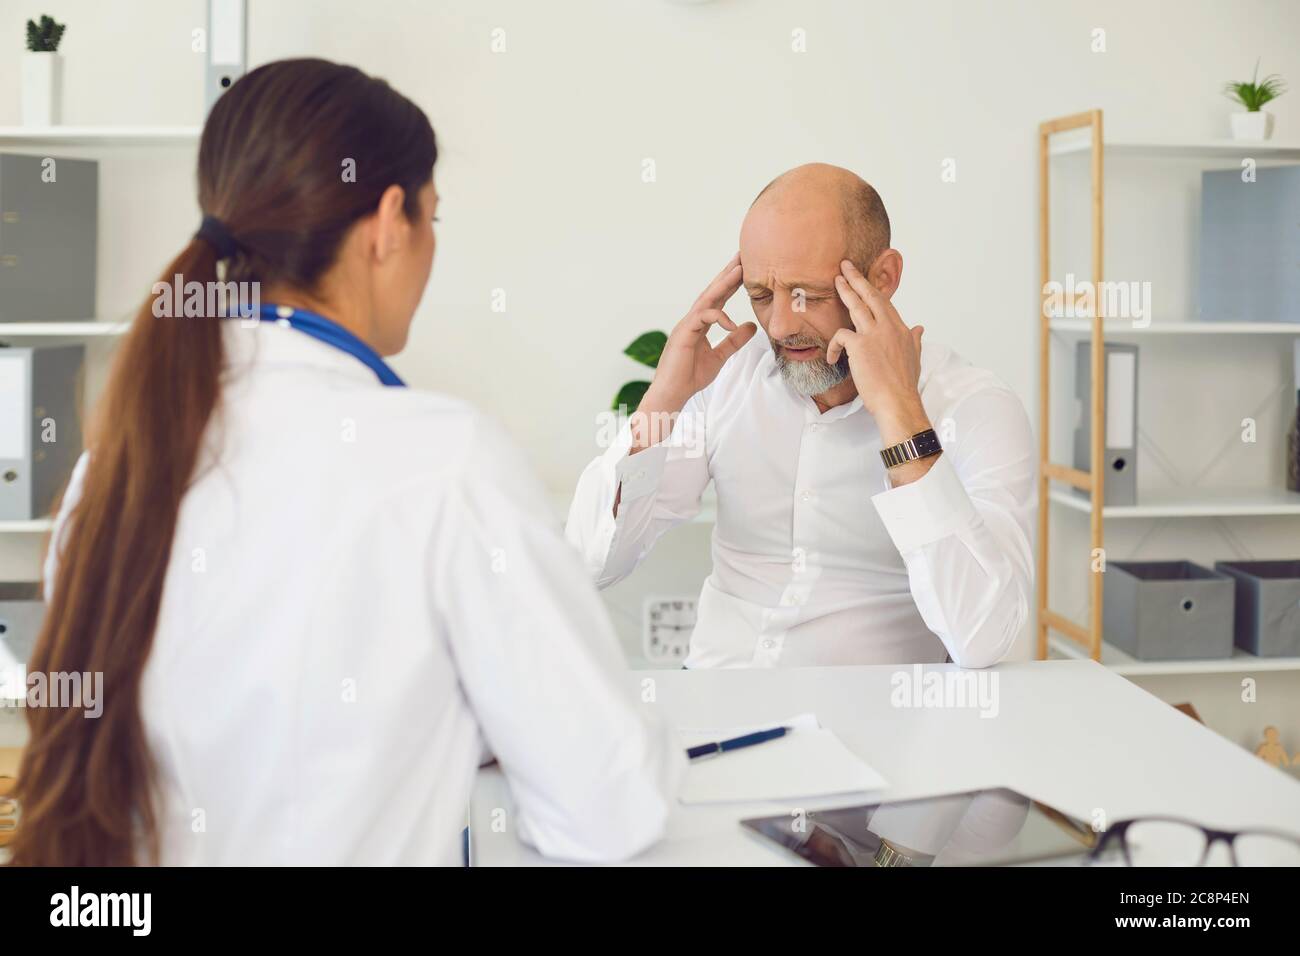 Maux de tête. Le senor du patient indique au médecin les symptômes de maux de tête assis sur une chaise dans un bureau de clinique. Banque D'Images